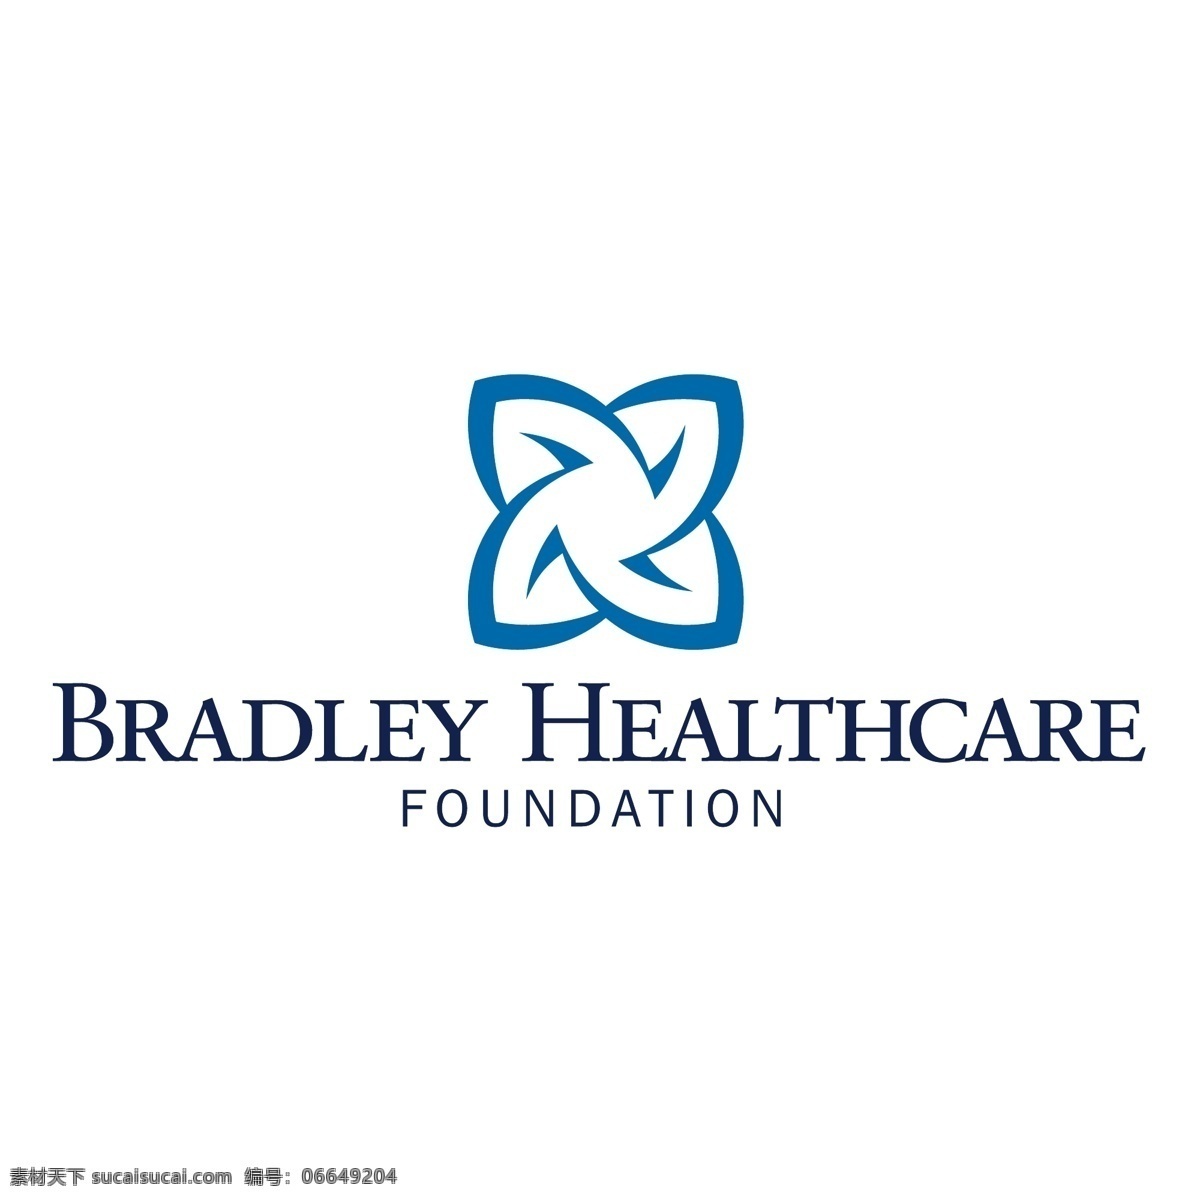 布拉德利 医疗保健 基金会 标识 公司 免费 品牌 品牌标识 商标 矢量标志下载 免费矢量标识 矢量 psd源文件 logo设计